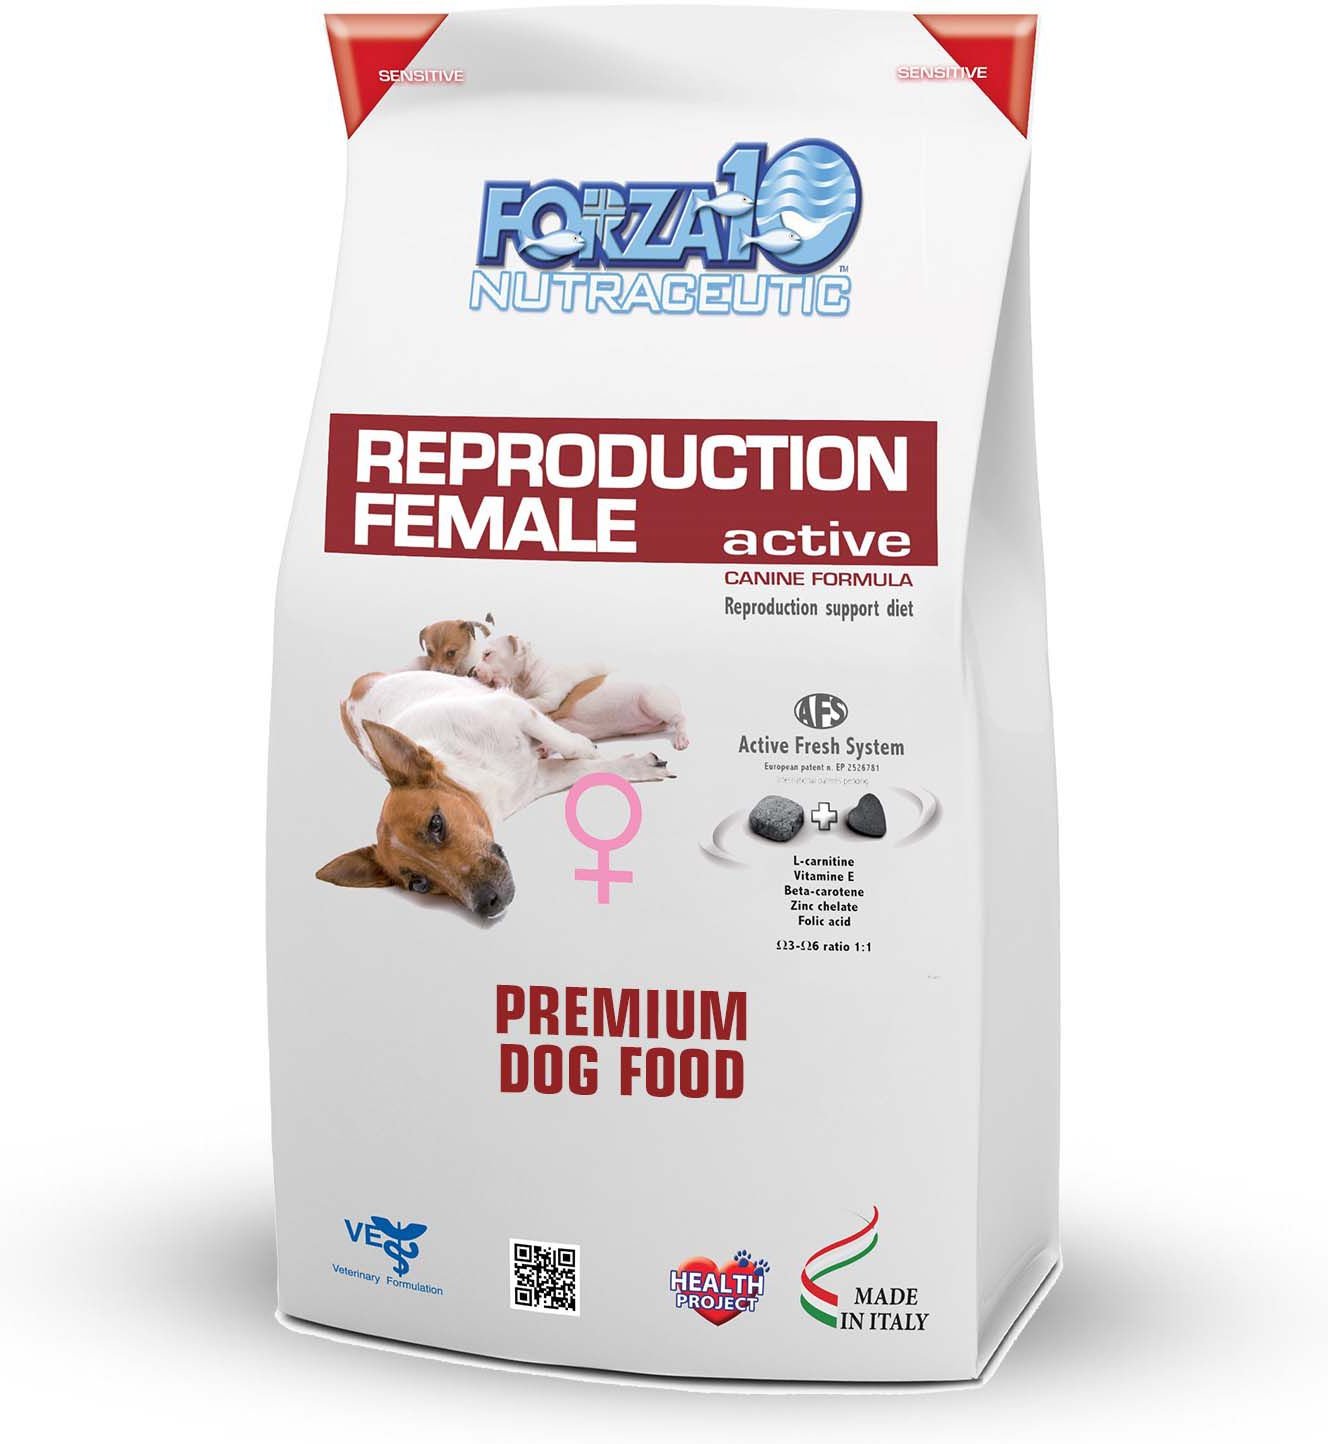 female dog reproduction